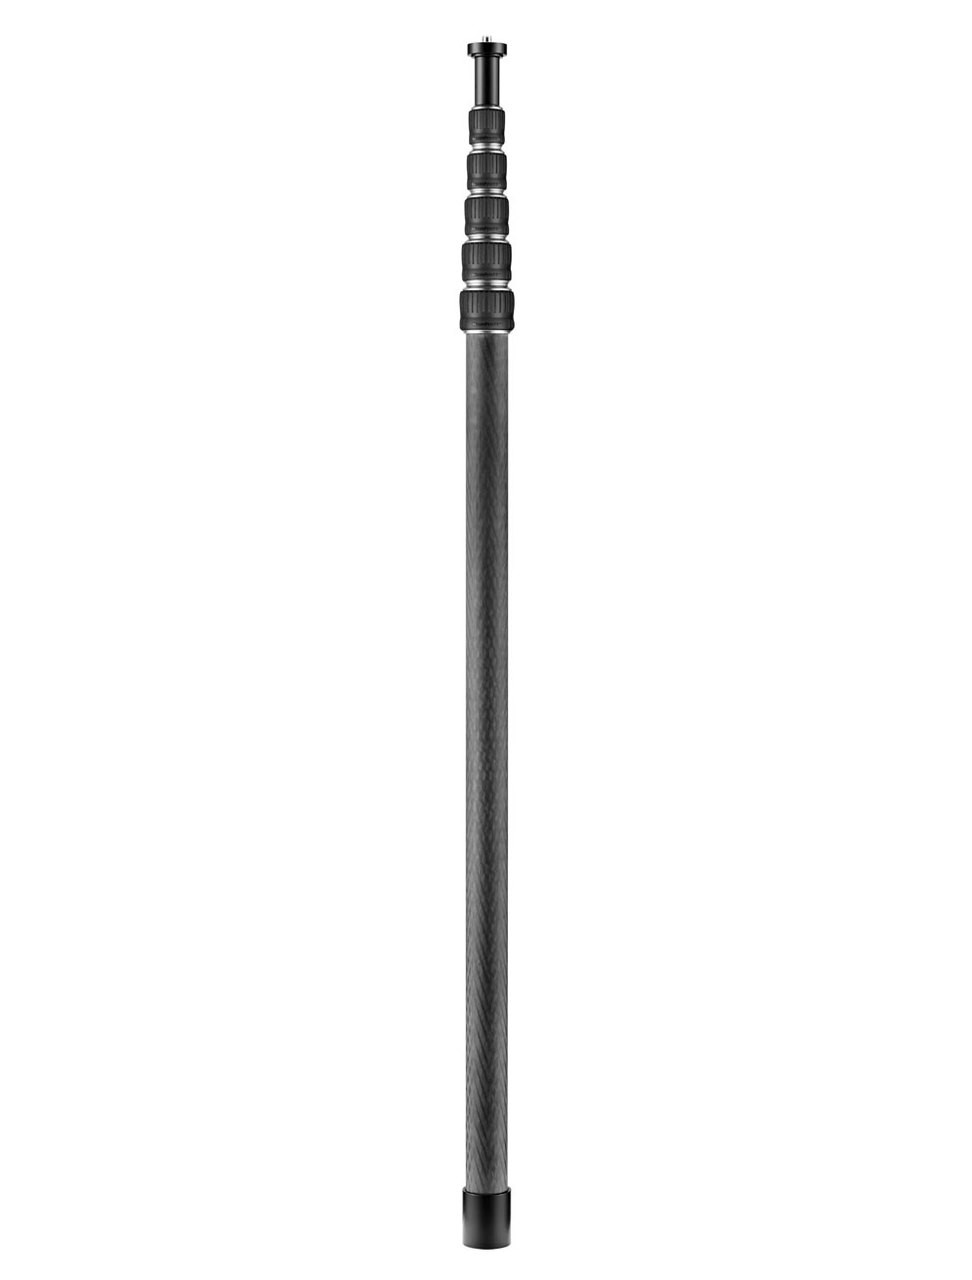 Manfrotto MBOOMCFVR-L Carbon Fibre 4.7m Extension Pole